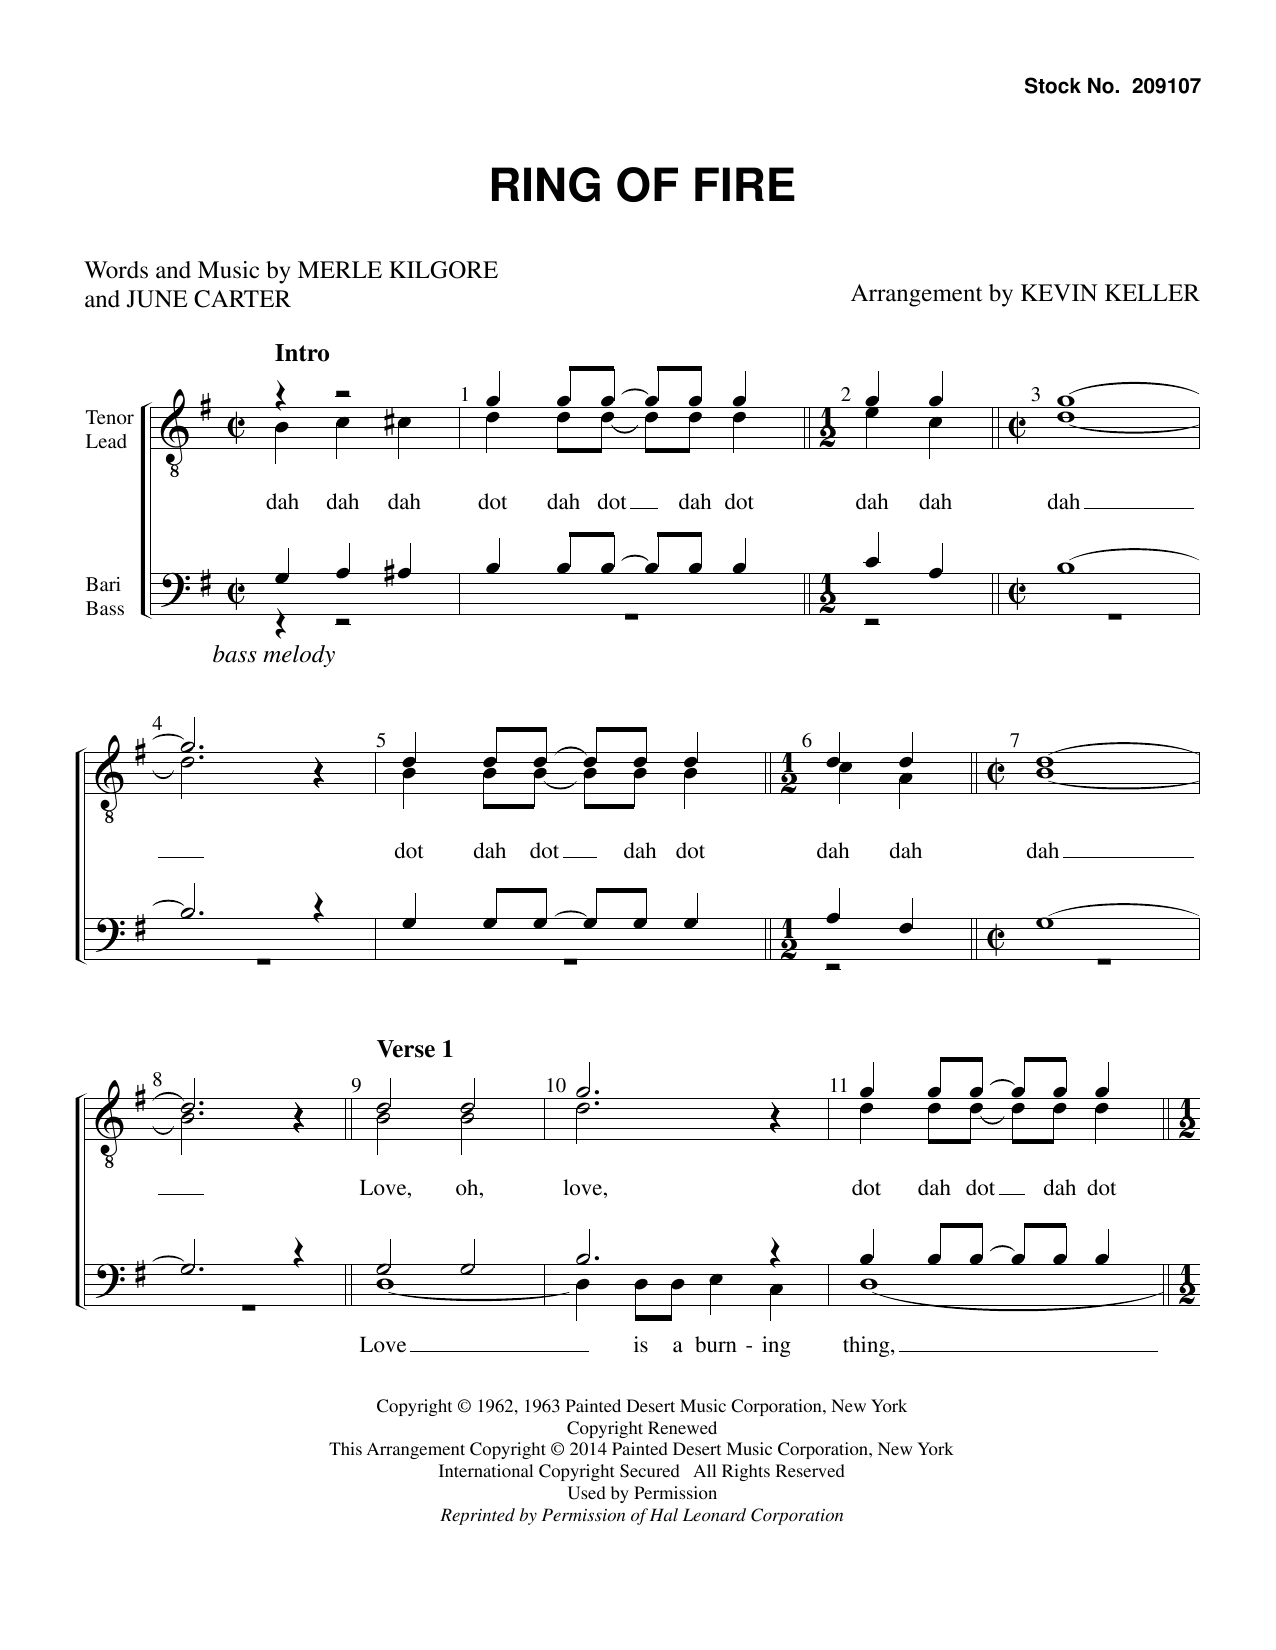 Download Johnny Cash Ring of Fire (arr. Kevin Keller) Sheet Music